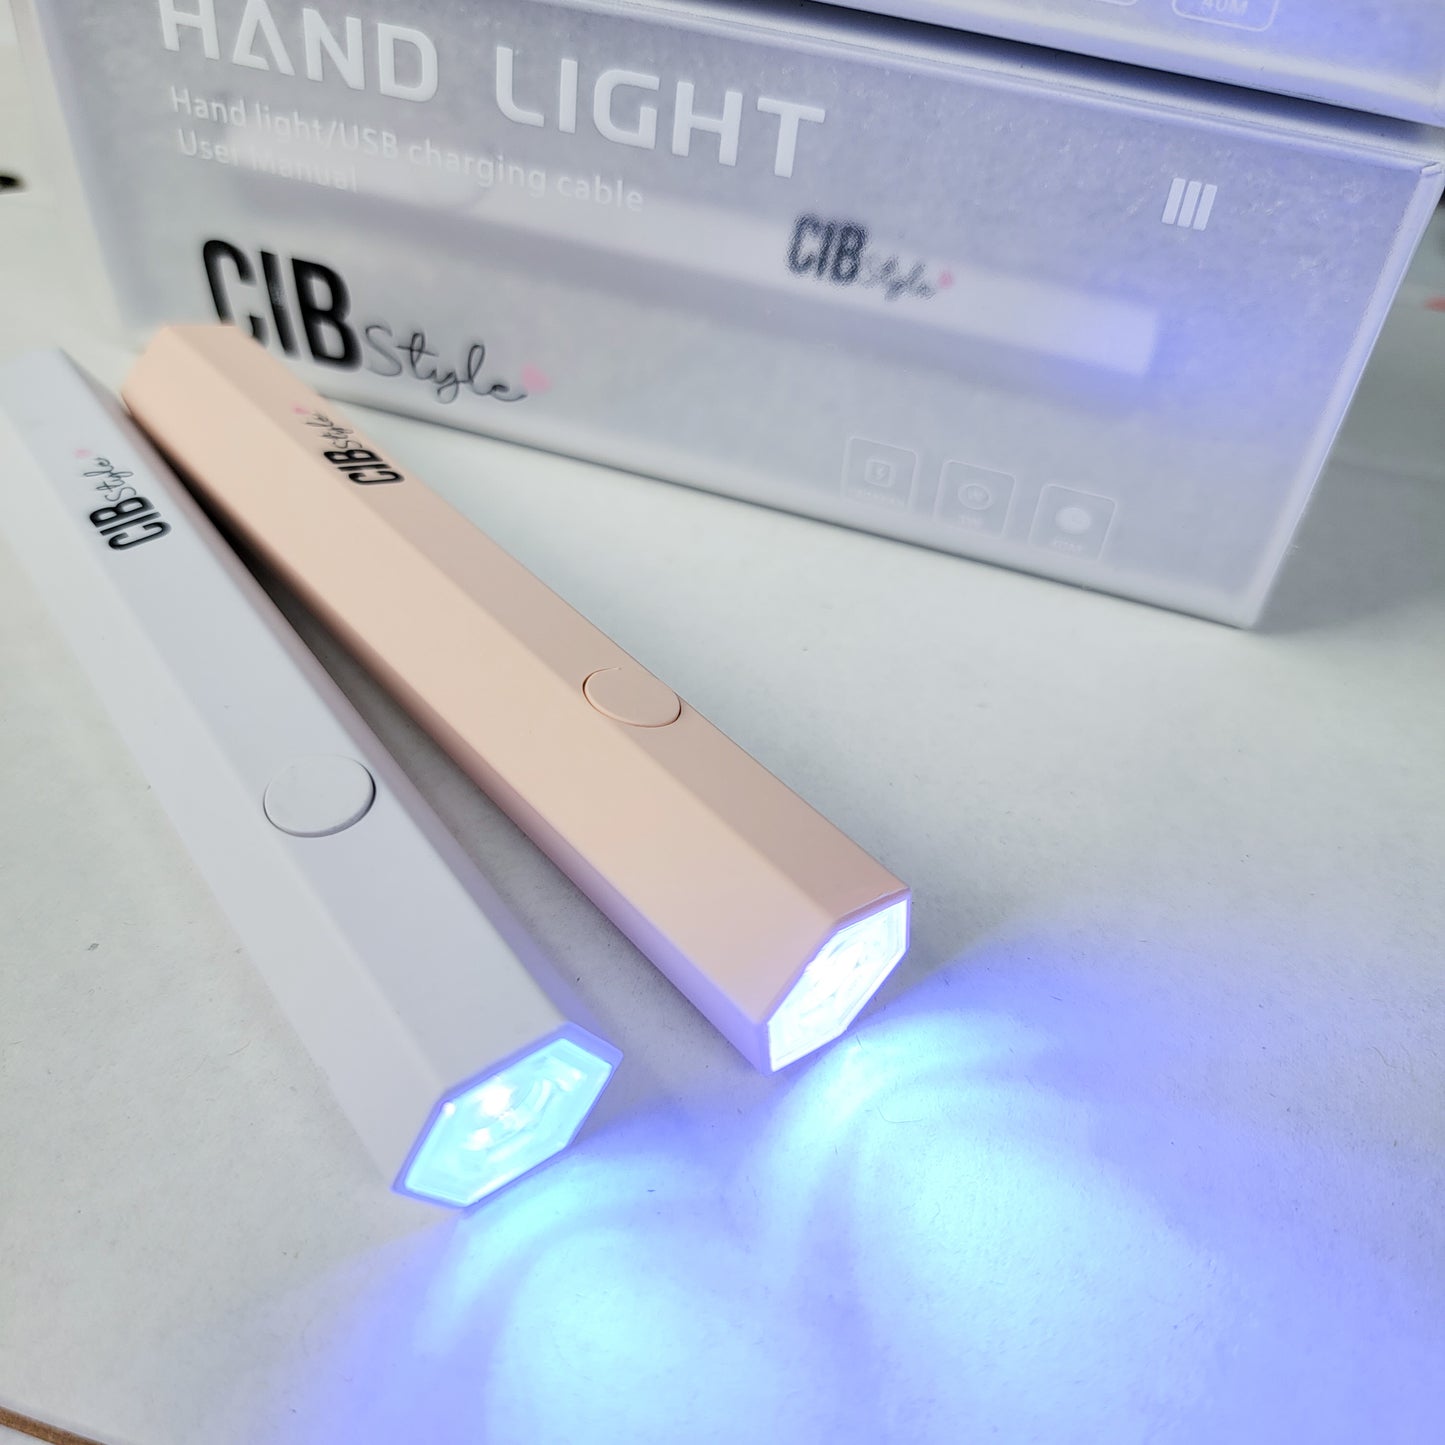 CIBSTYLE Handheld Gel X Lamp for Gel Nails